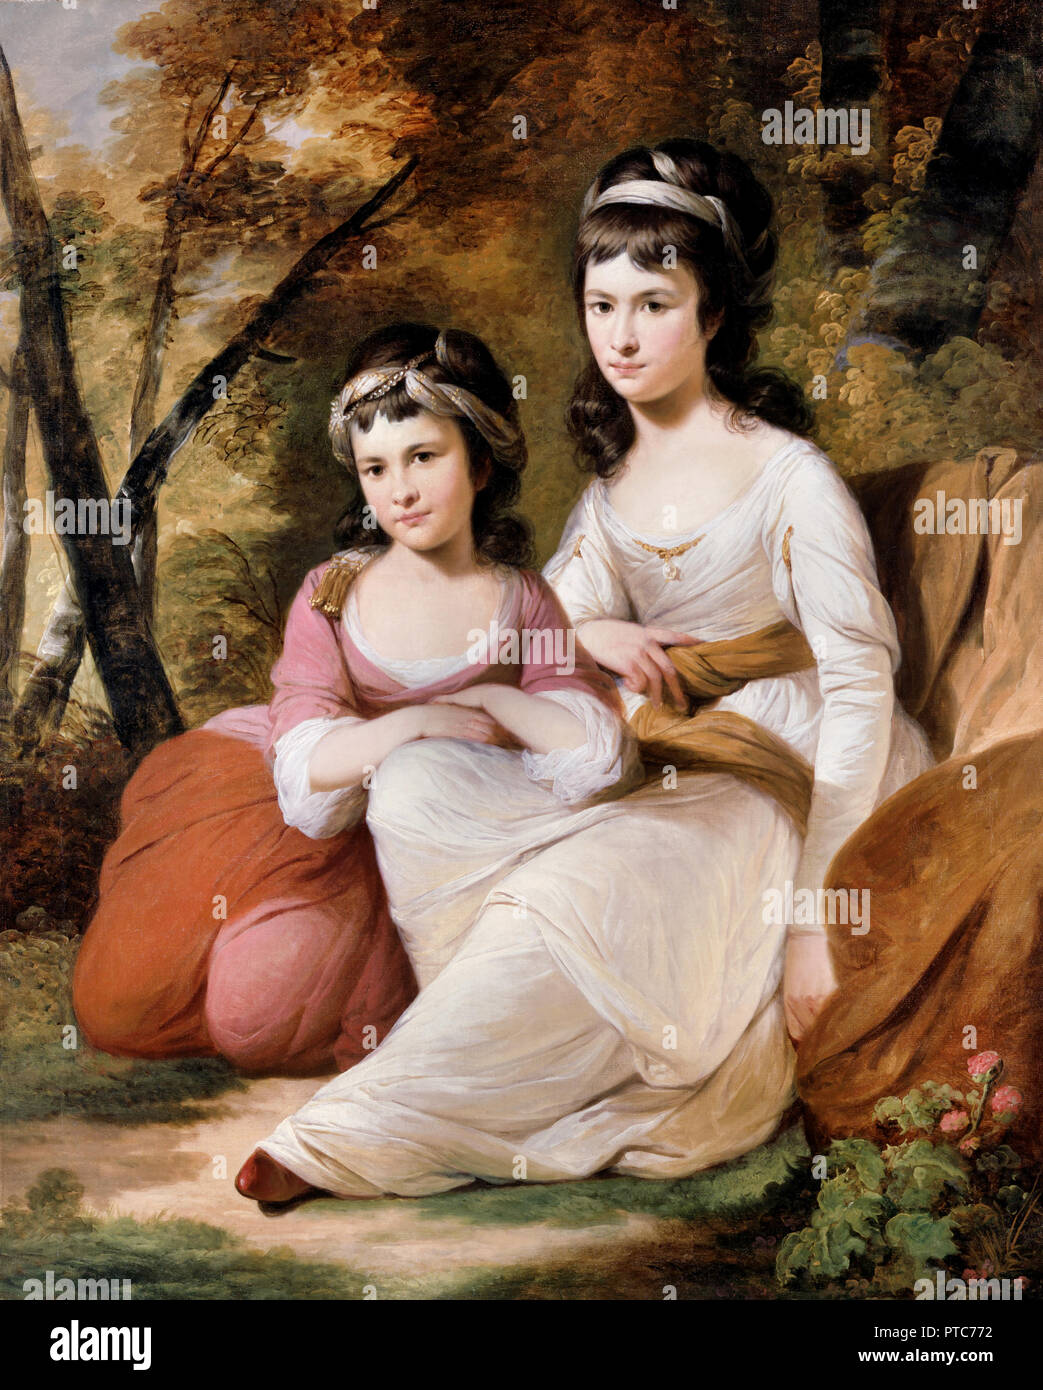 Tilly électrique, Eliza et Mary Davidson, vers 1784, huile sur toile, Dulwich Picture Gallery, Londres, Angleterre. Banque D'Images